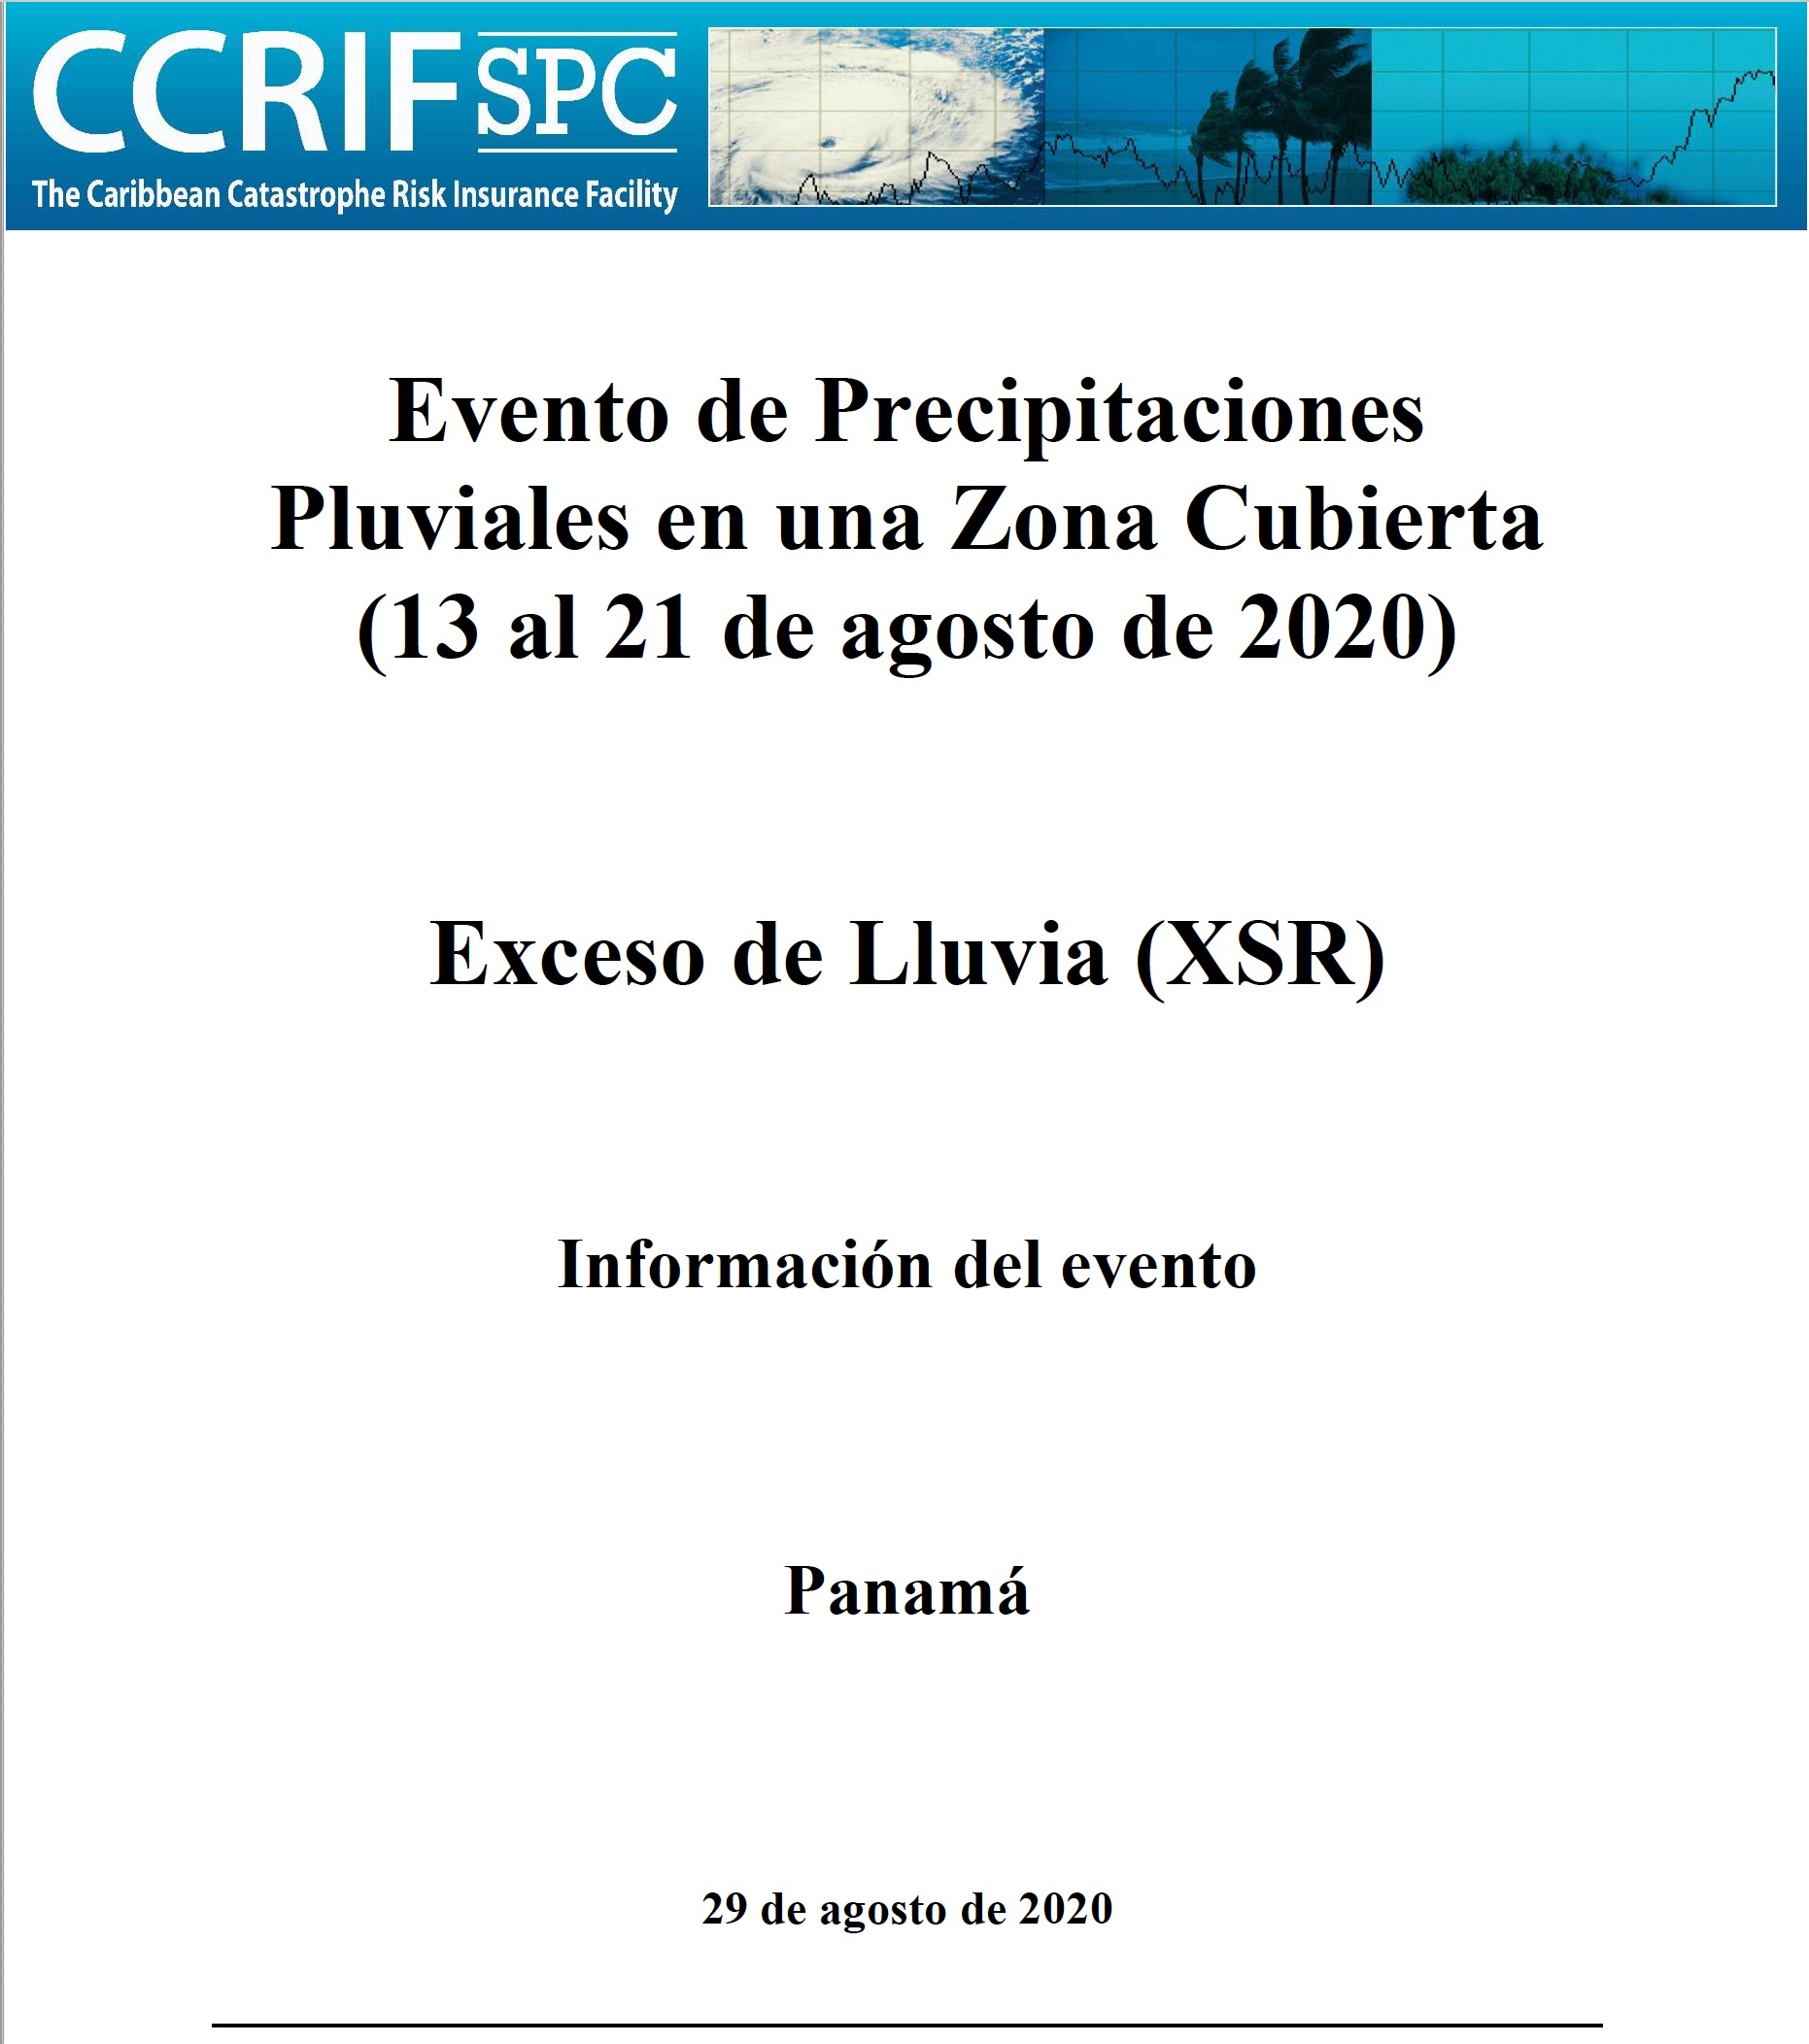 Información del evento - Exceso de Precipitaciones - Episodio de Precipitaciones Pluviales en una Zona Cubierta - Panama - 29 de agosto de 2020